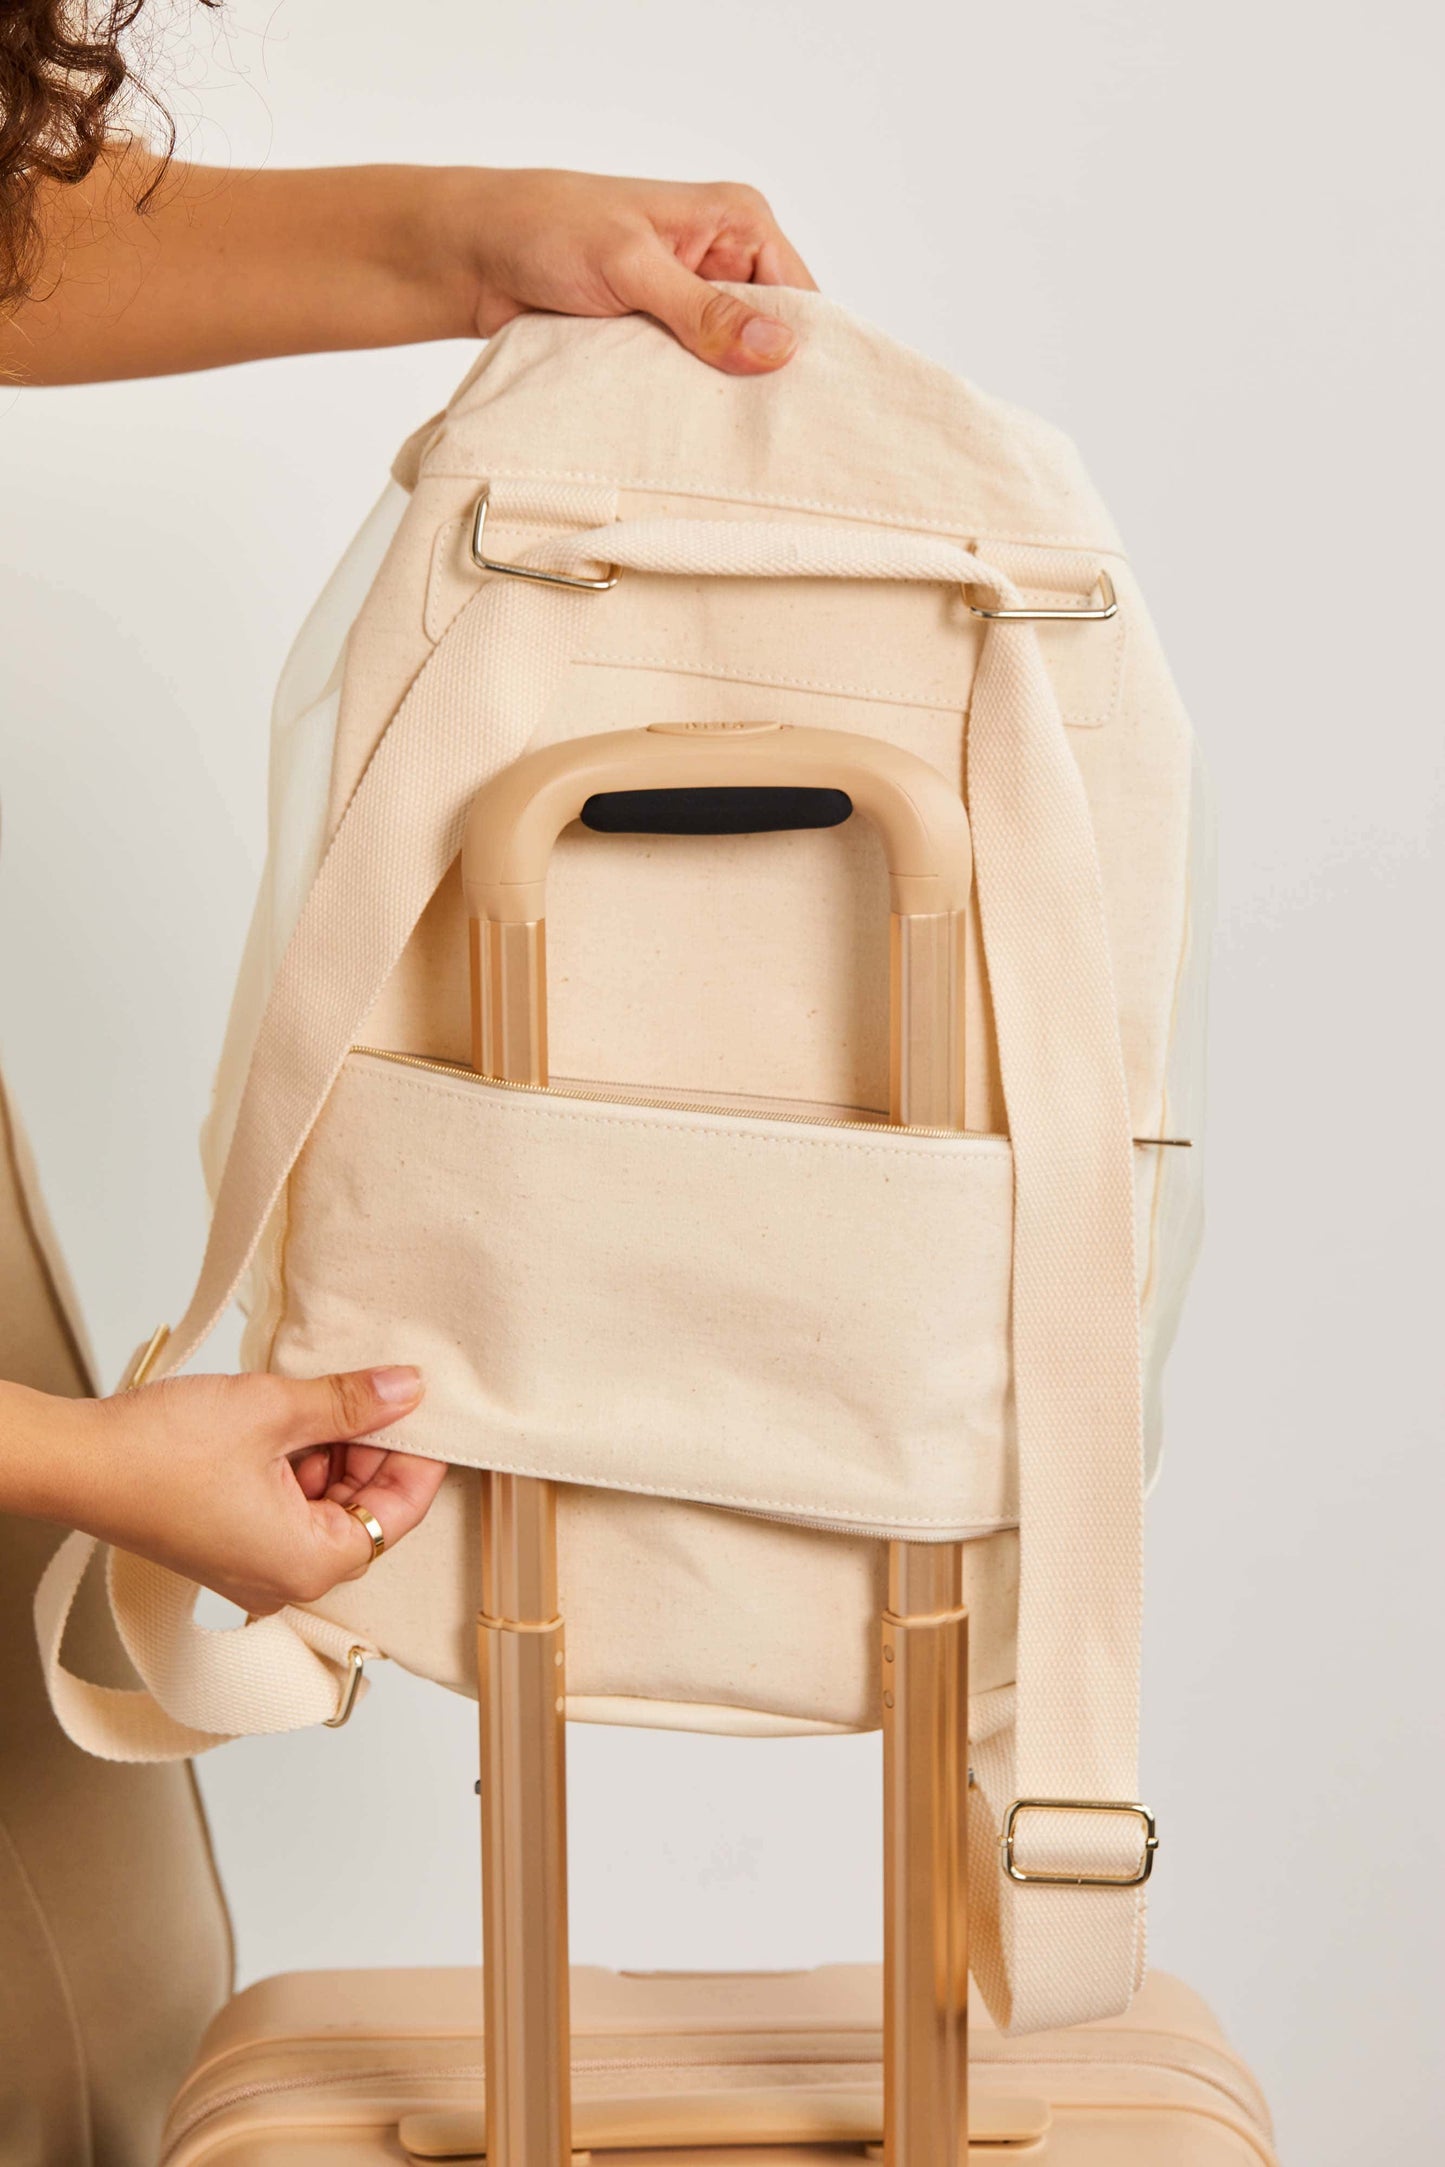 The High-brid Backpack